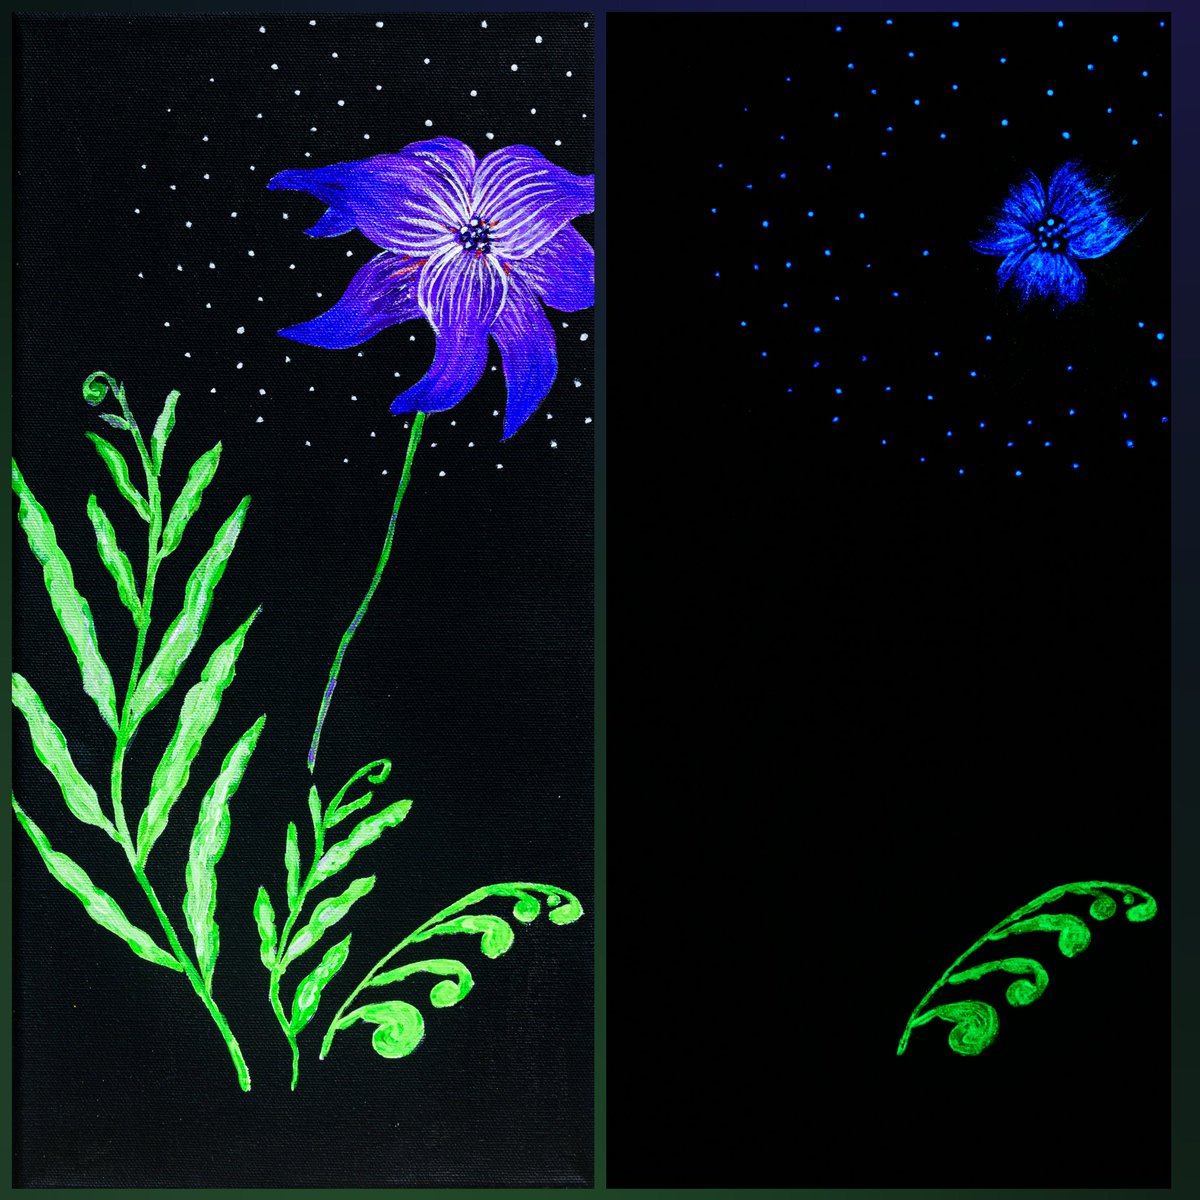 Акриловая картина в подарок. Светится в темноте. #artwork #painting #Flowers #Shine #ideaforgift #giftideas